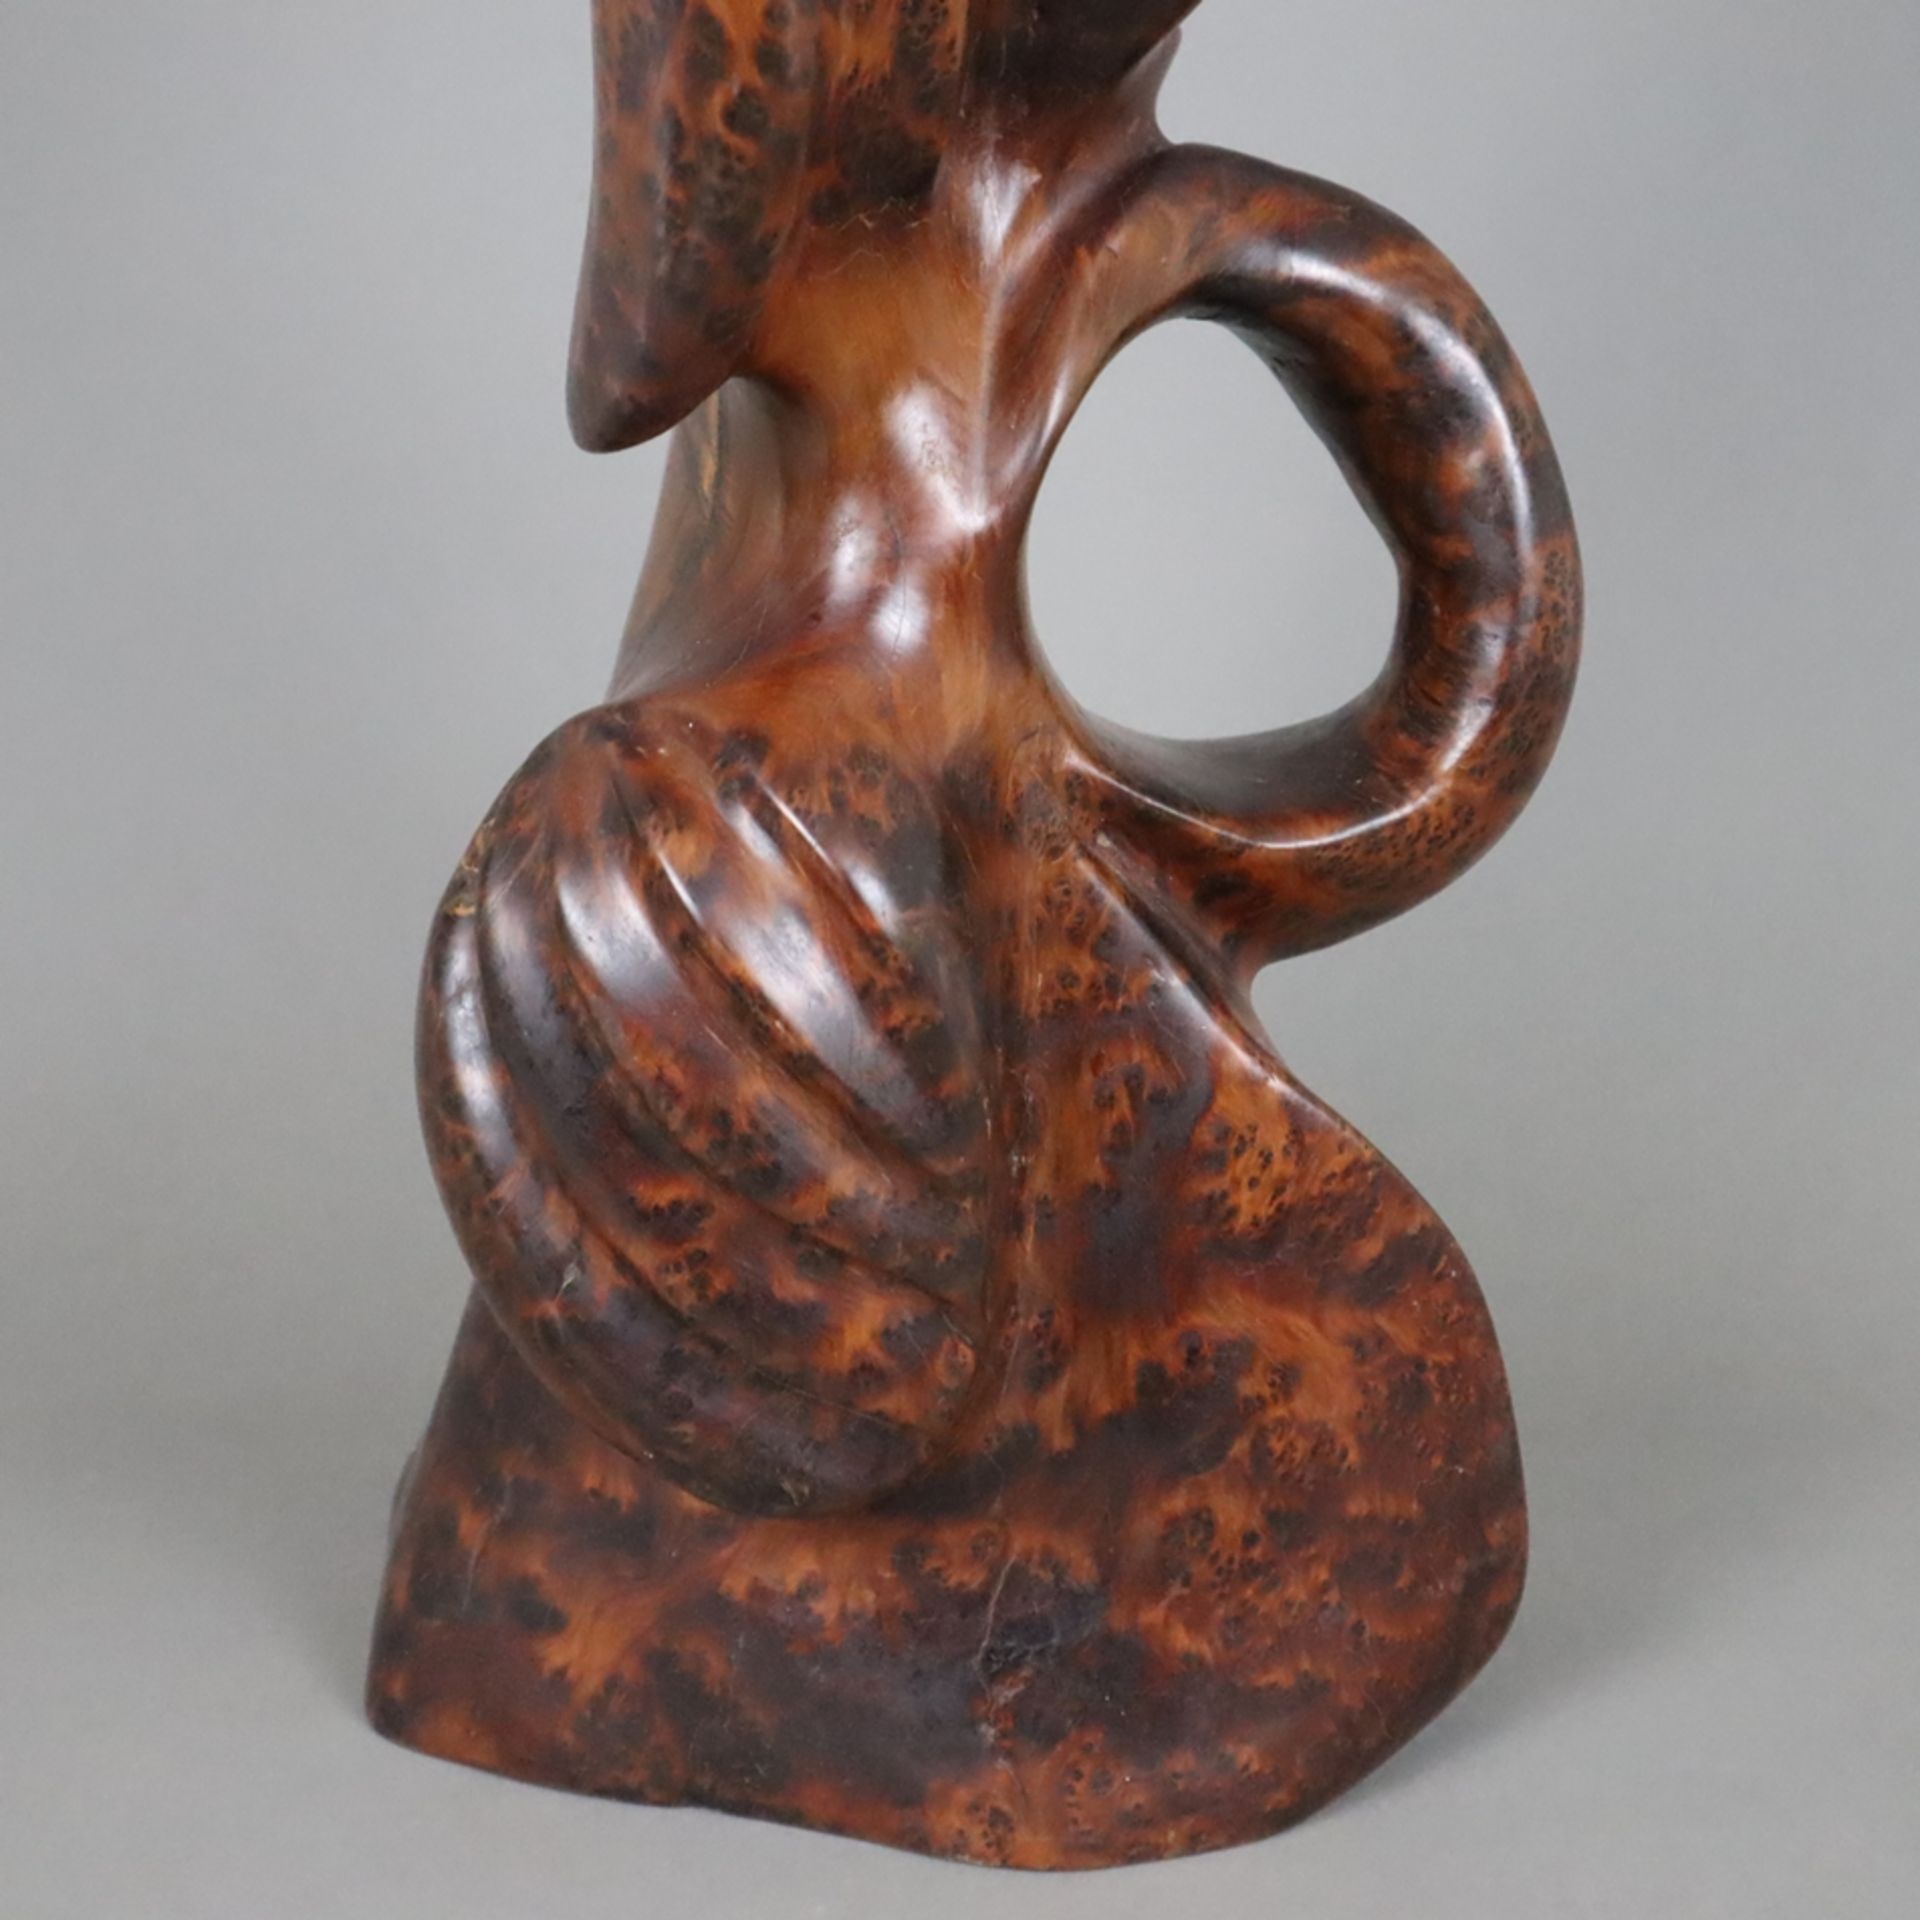 Wurzelholz-Skulptur - Große abstrakte Figur, schön gemasertes Wurzelholz, vollrund geschnitzt, poli - Bild 5 aus 7